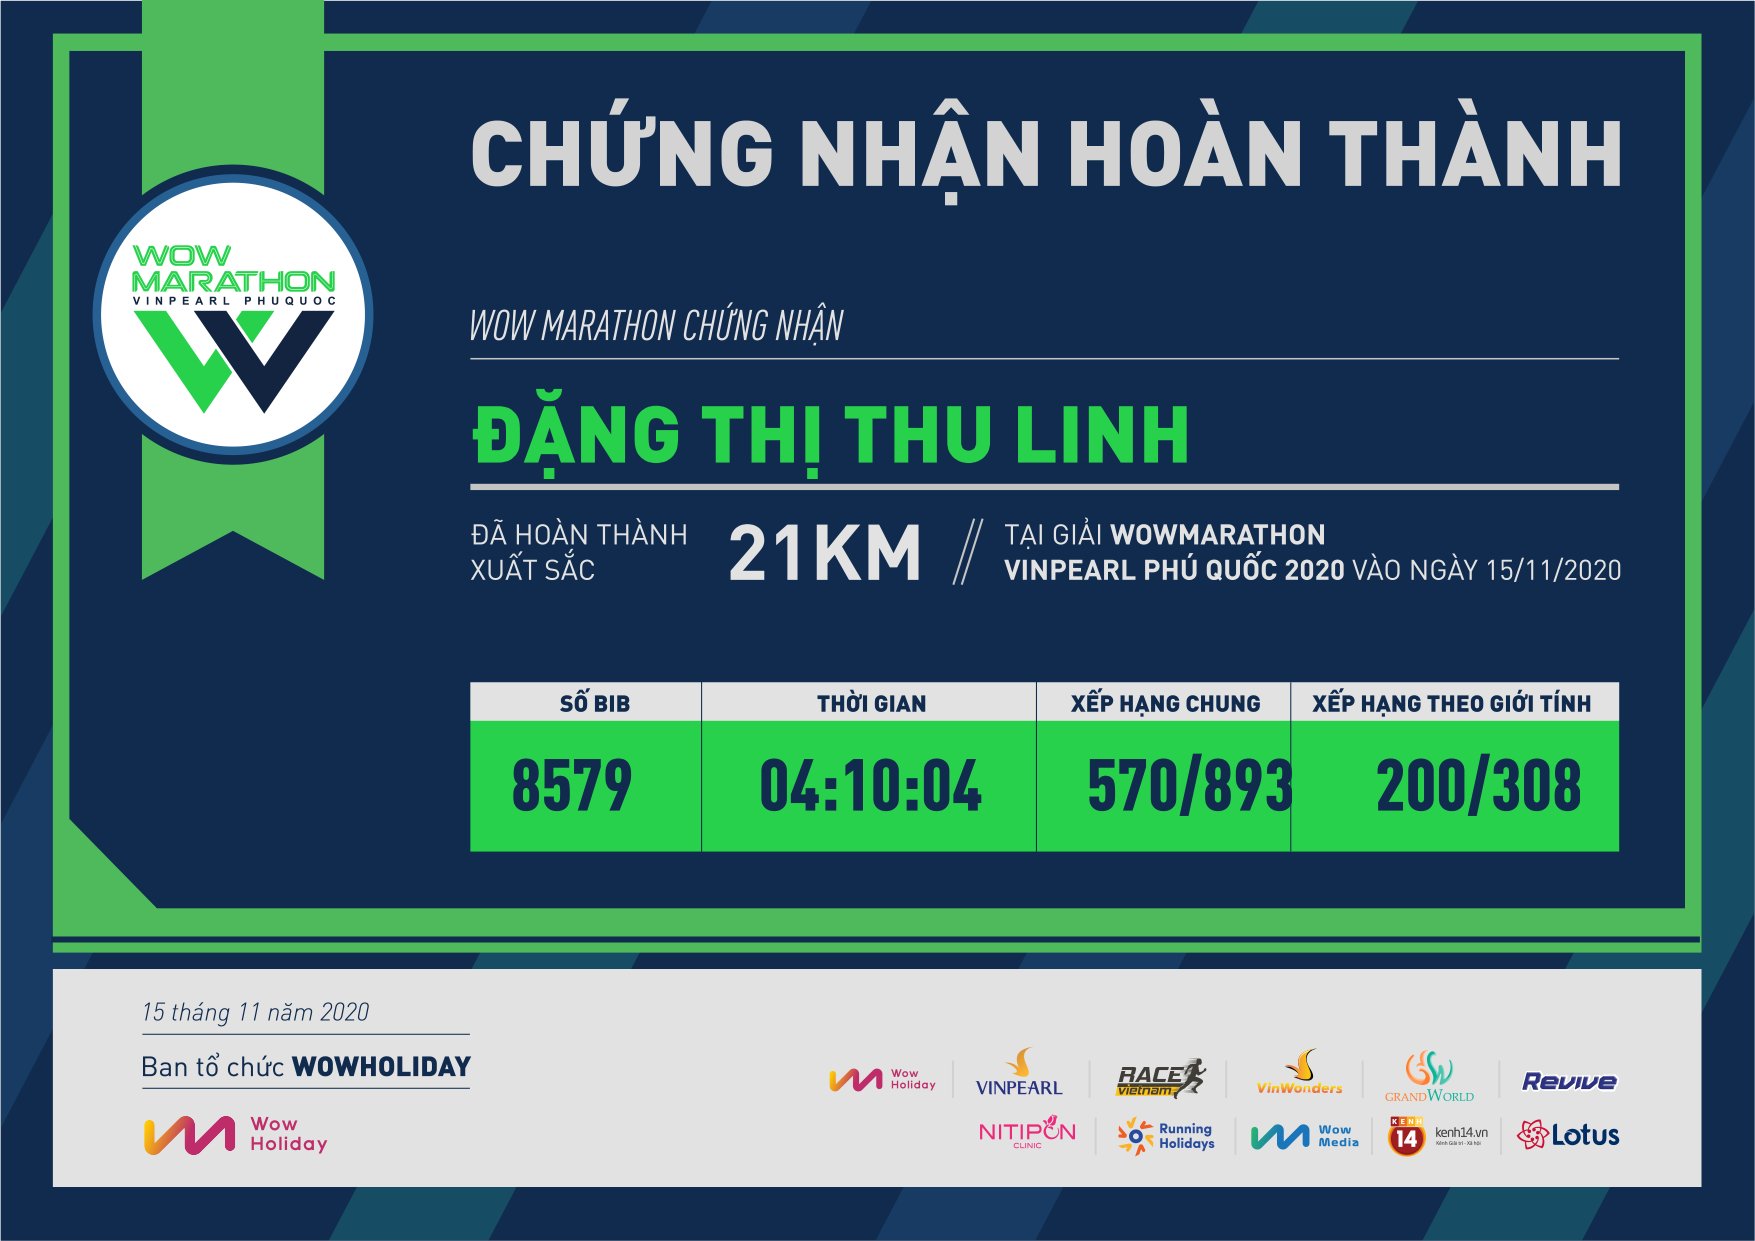 8579 - Đặng Thị Thu Linh